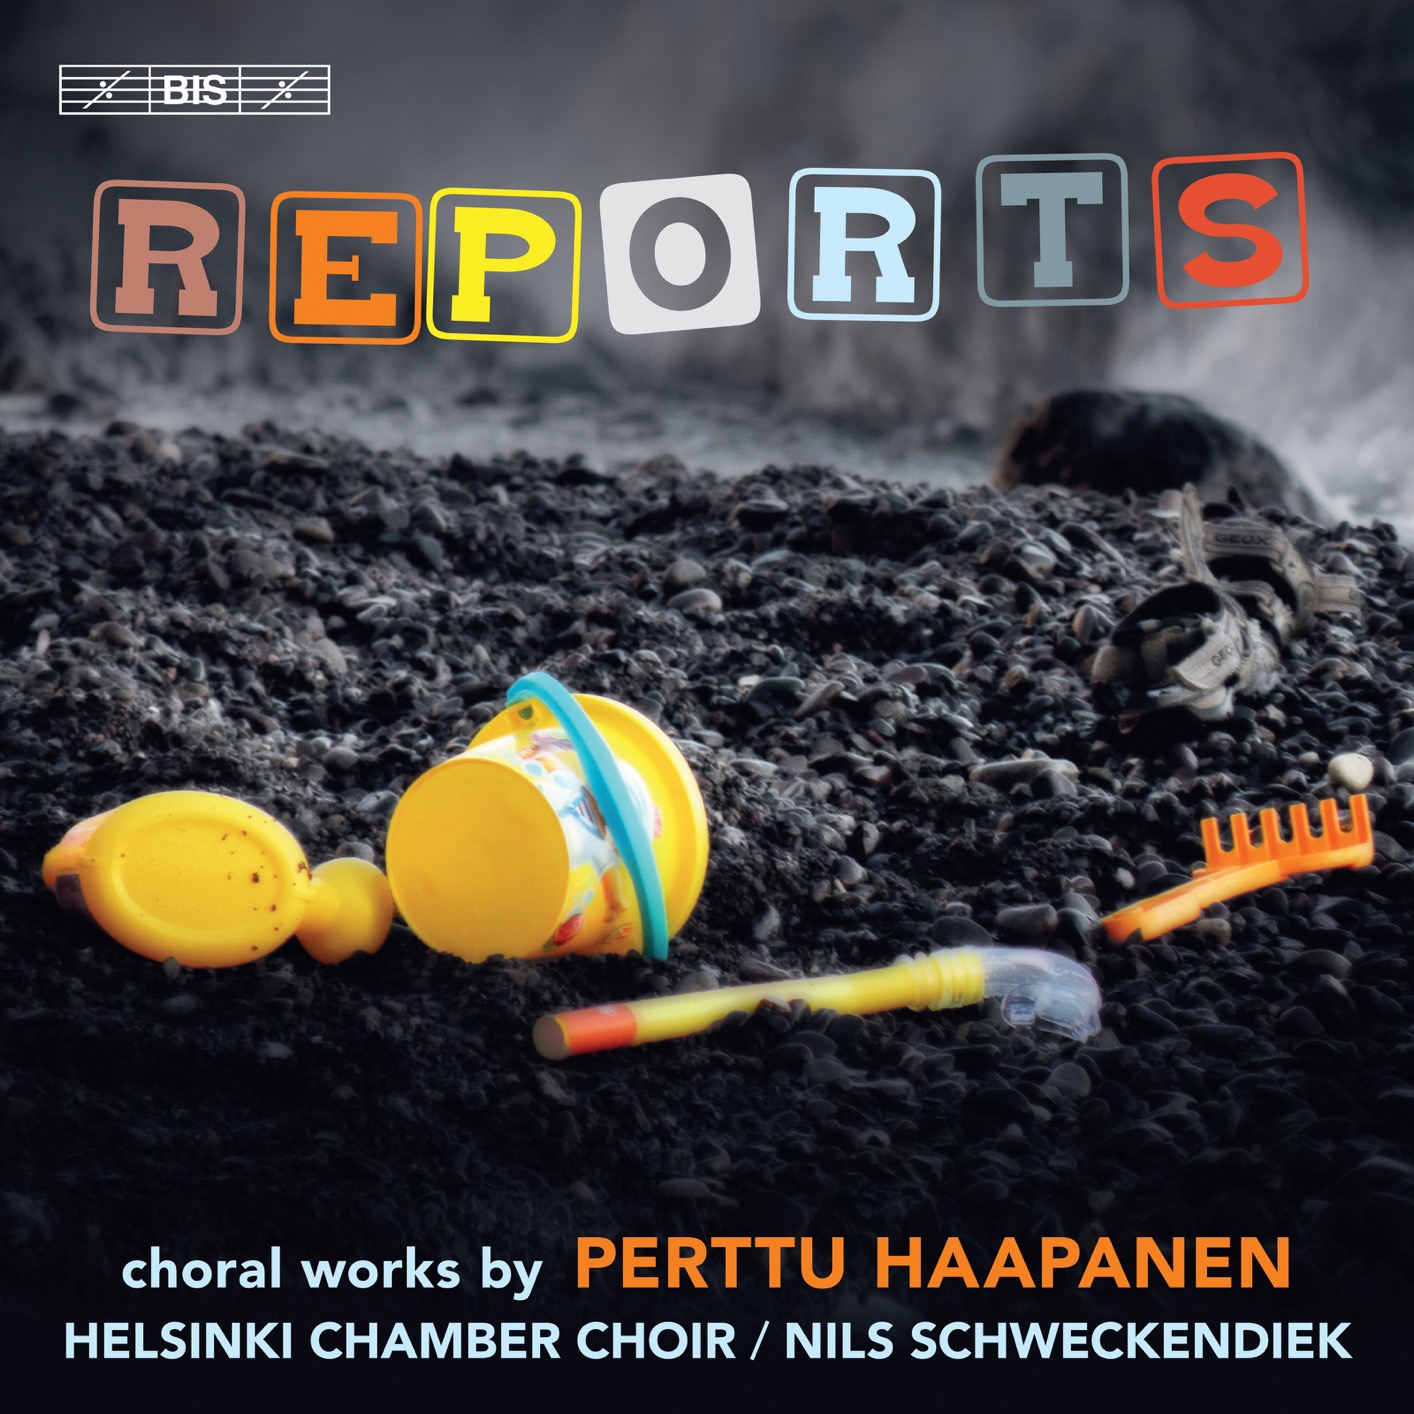 Helsinki Chamber Choir & Nils Schweckendiek - Haapanen: Reports (2019) [FLAC 24bit/48kHz]